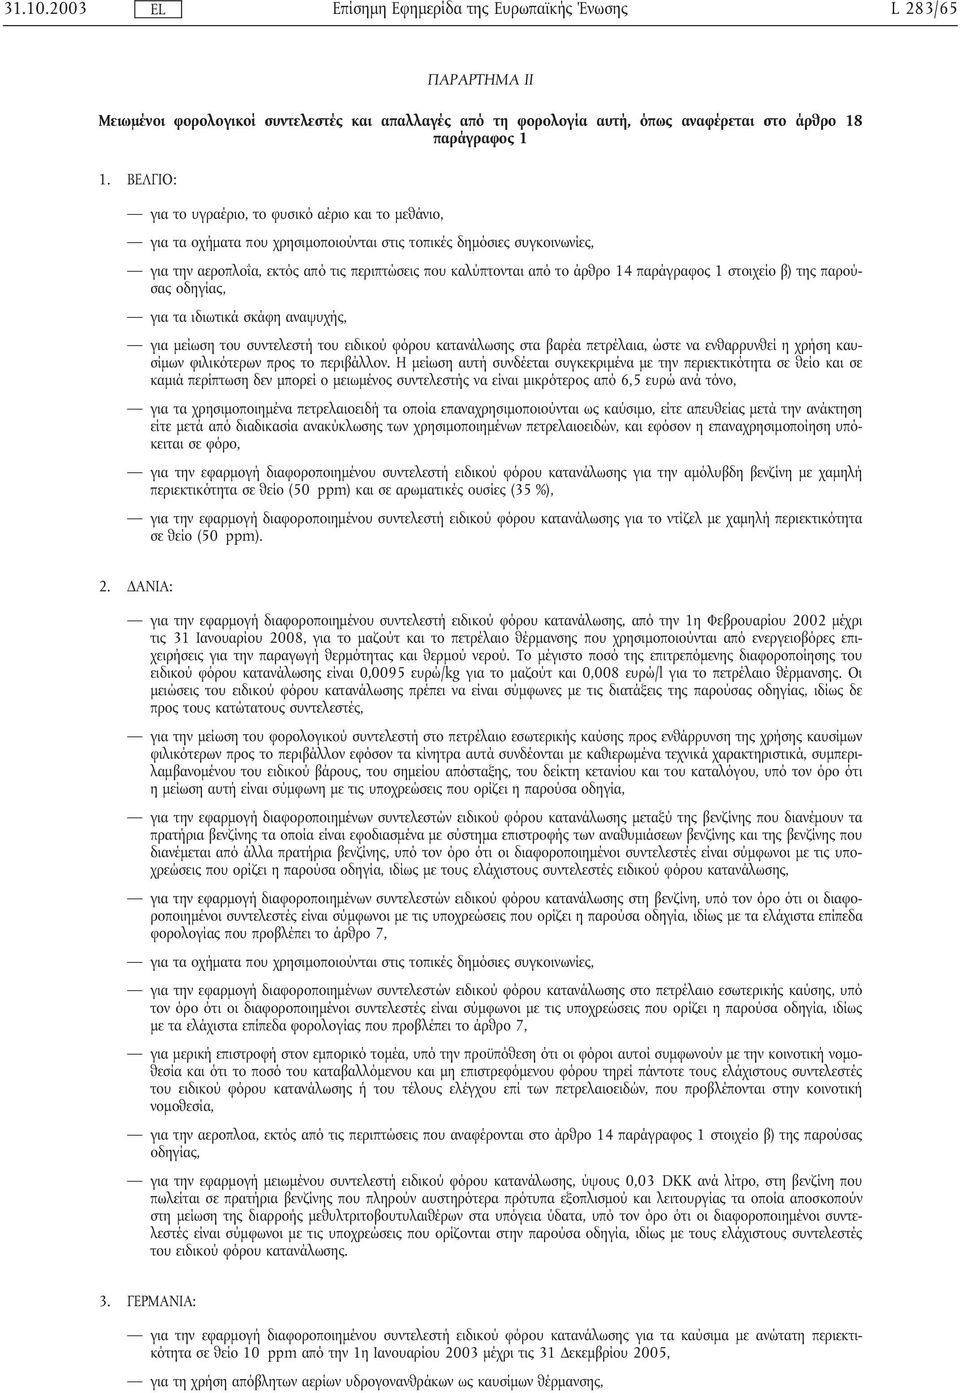 άρθρο 14 παράγραφος 1 στοιχείο β) της παρούσας οδηγίας, για τα ιδιωτικά σκάφη αναψυχής, για µείωση του συντελεστήτου ειδικού φόρου κατανάλωσης στα βαρέα πετρέλαια, ώστε να ενθαρρυνθεί η χρήση